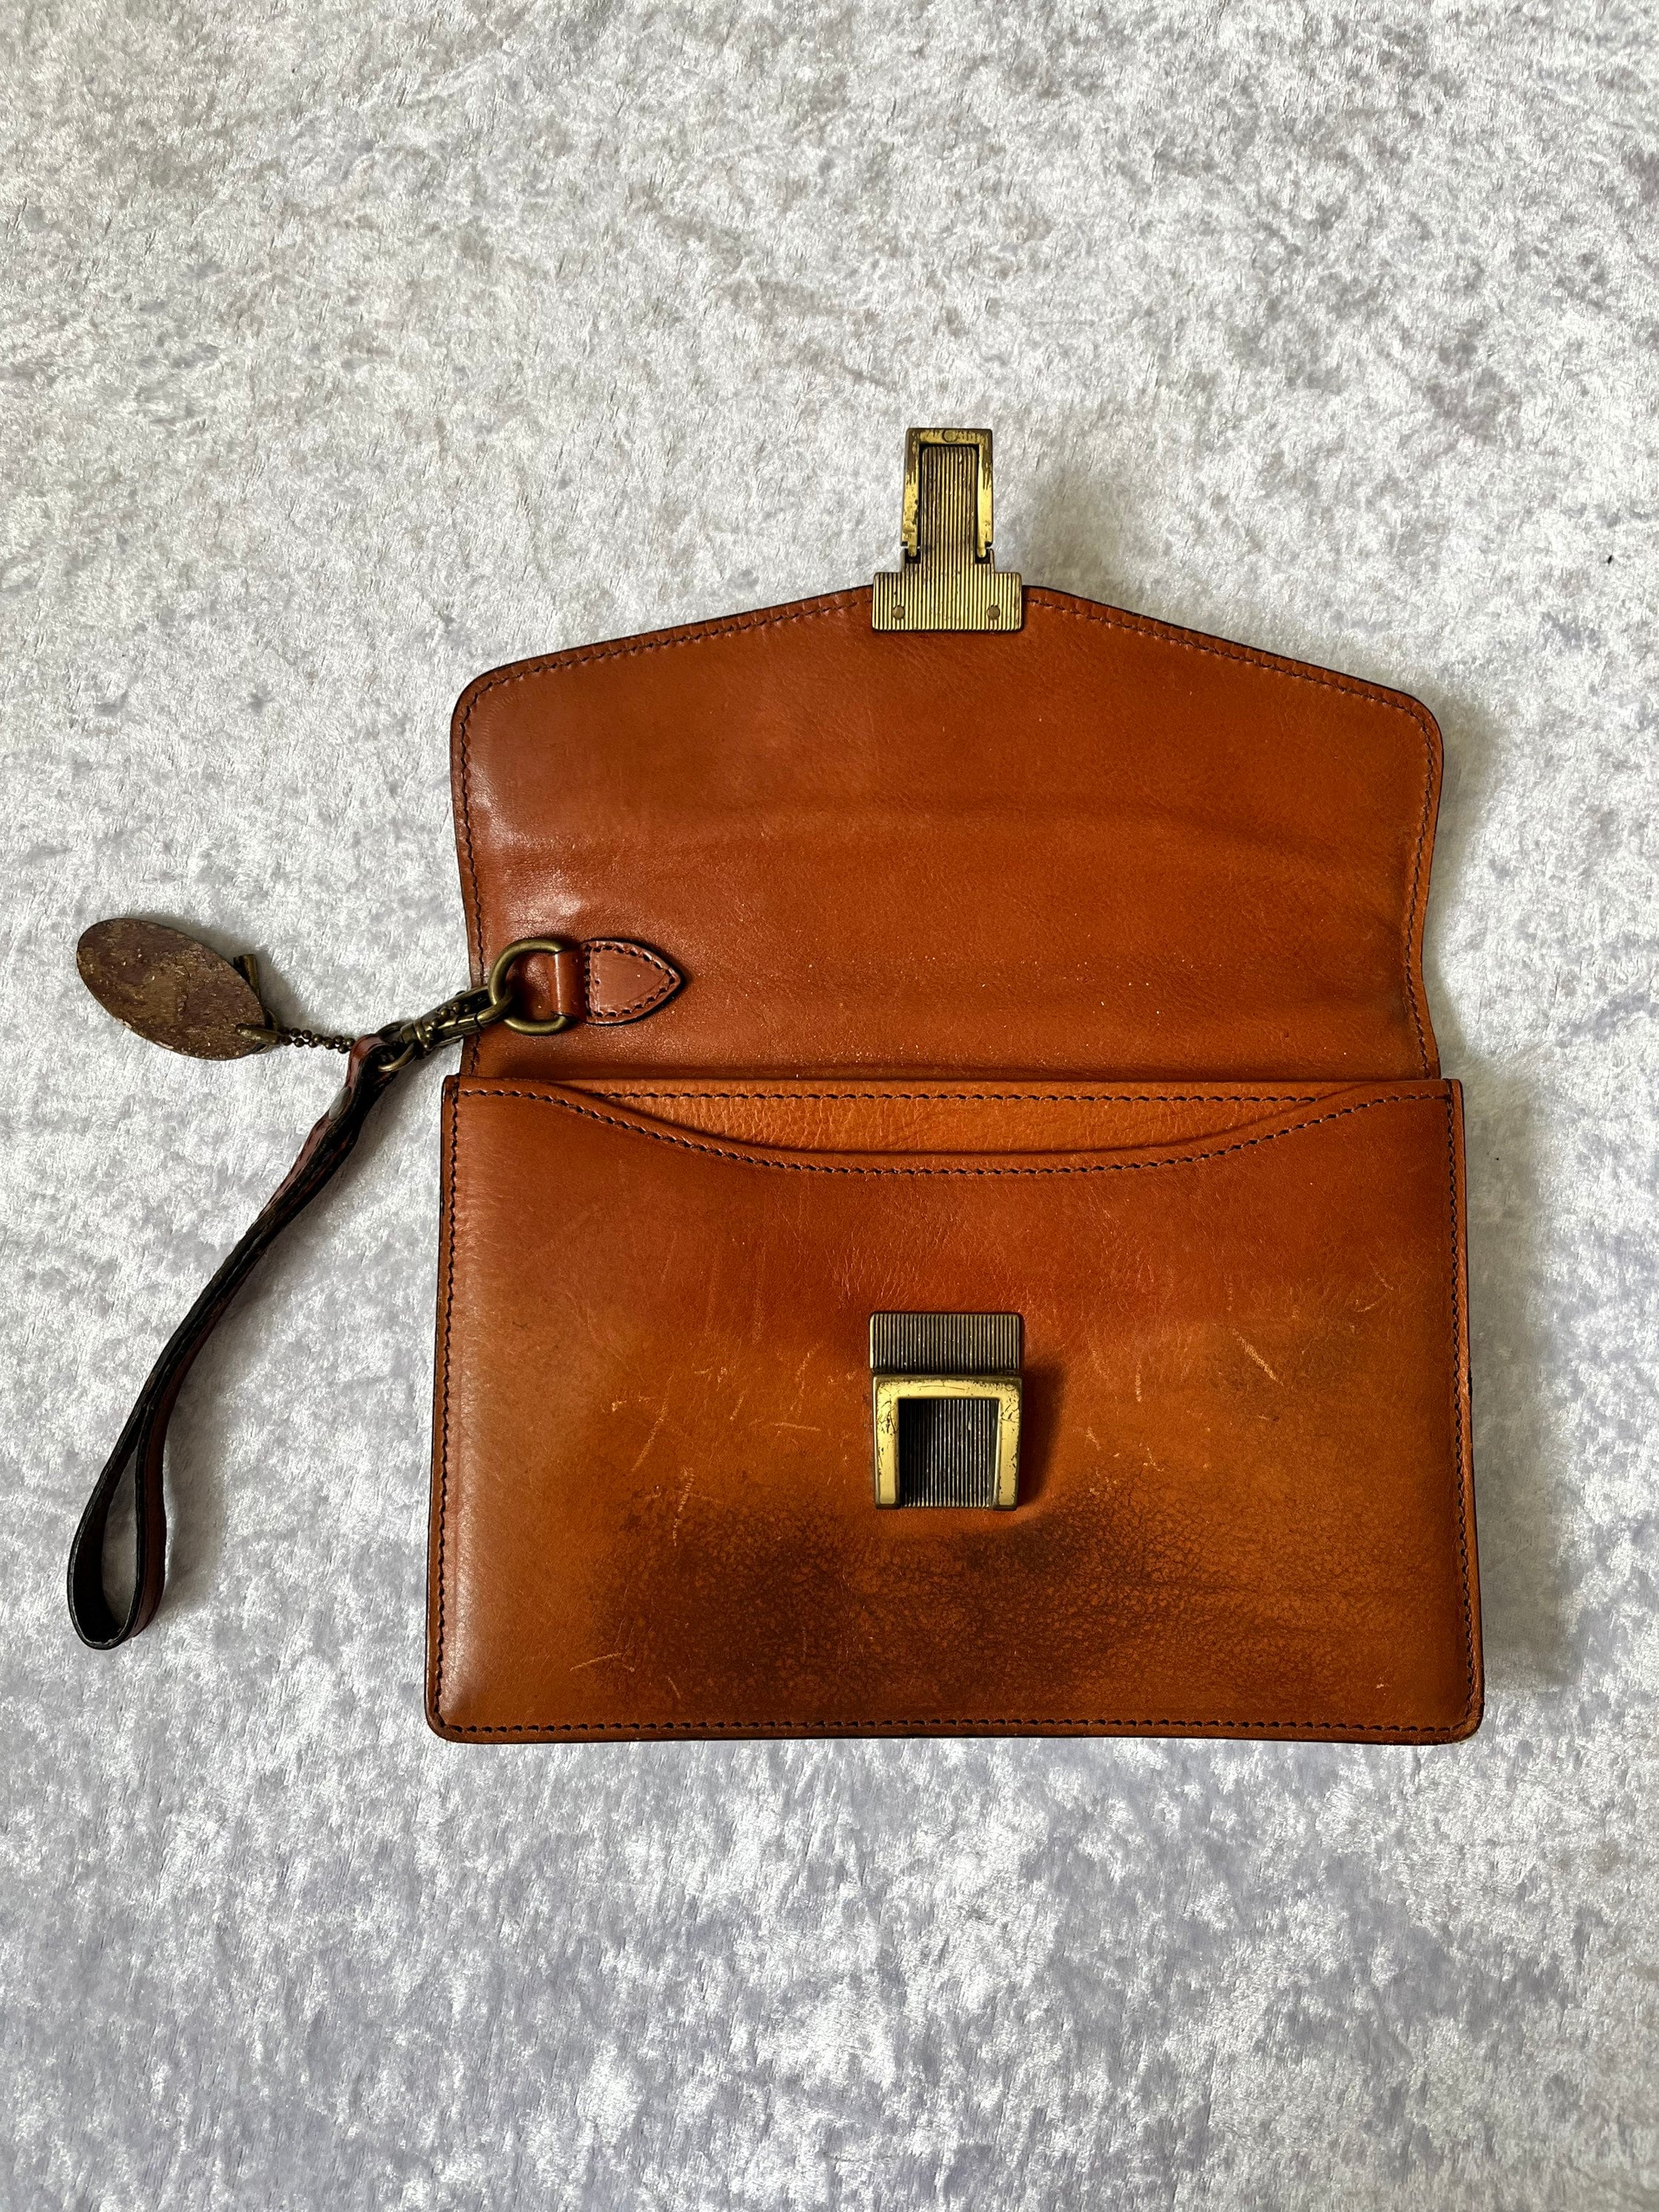 My first ever designer handbag. I'm so in love! : r/handbags